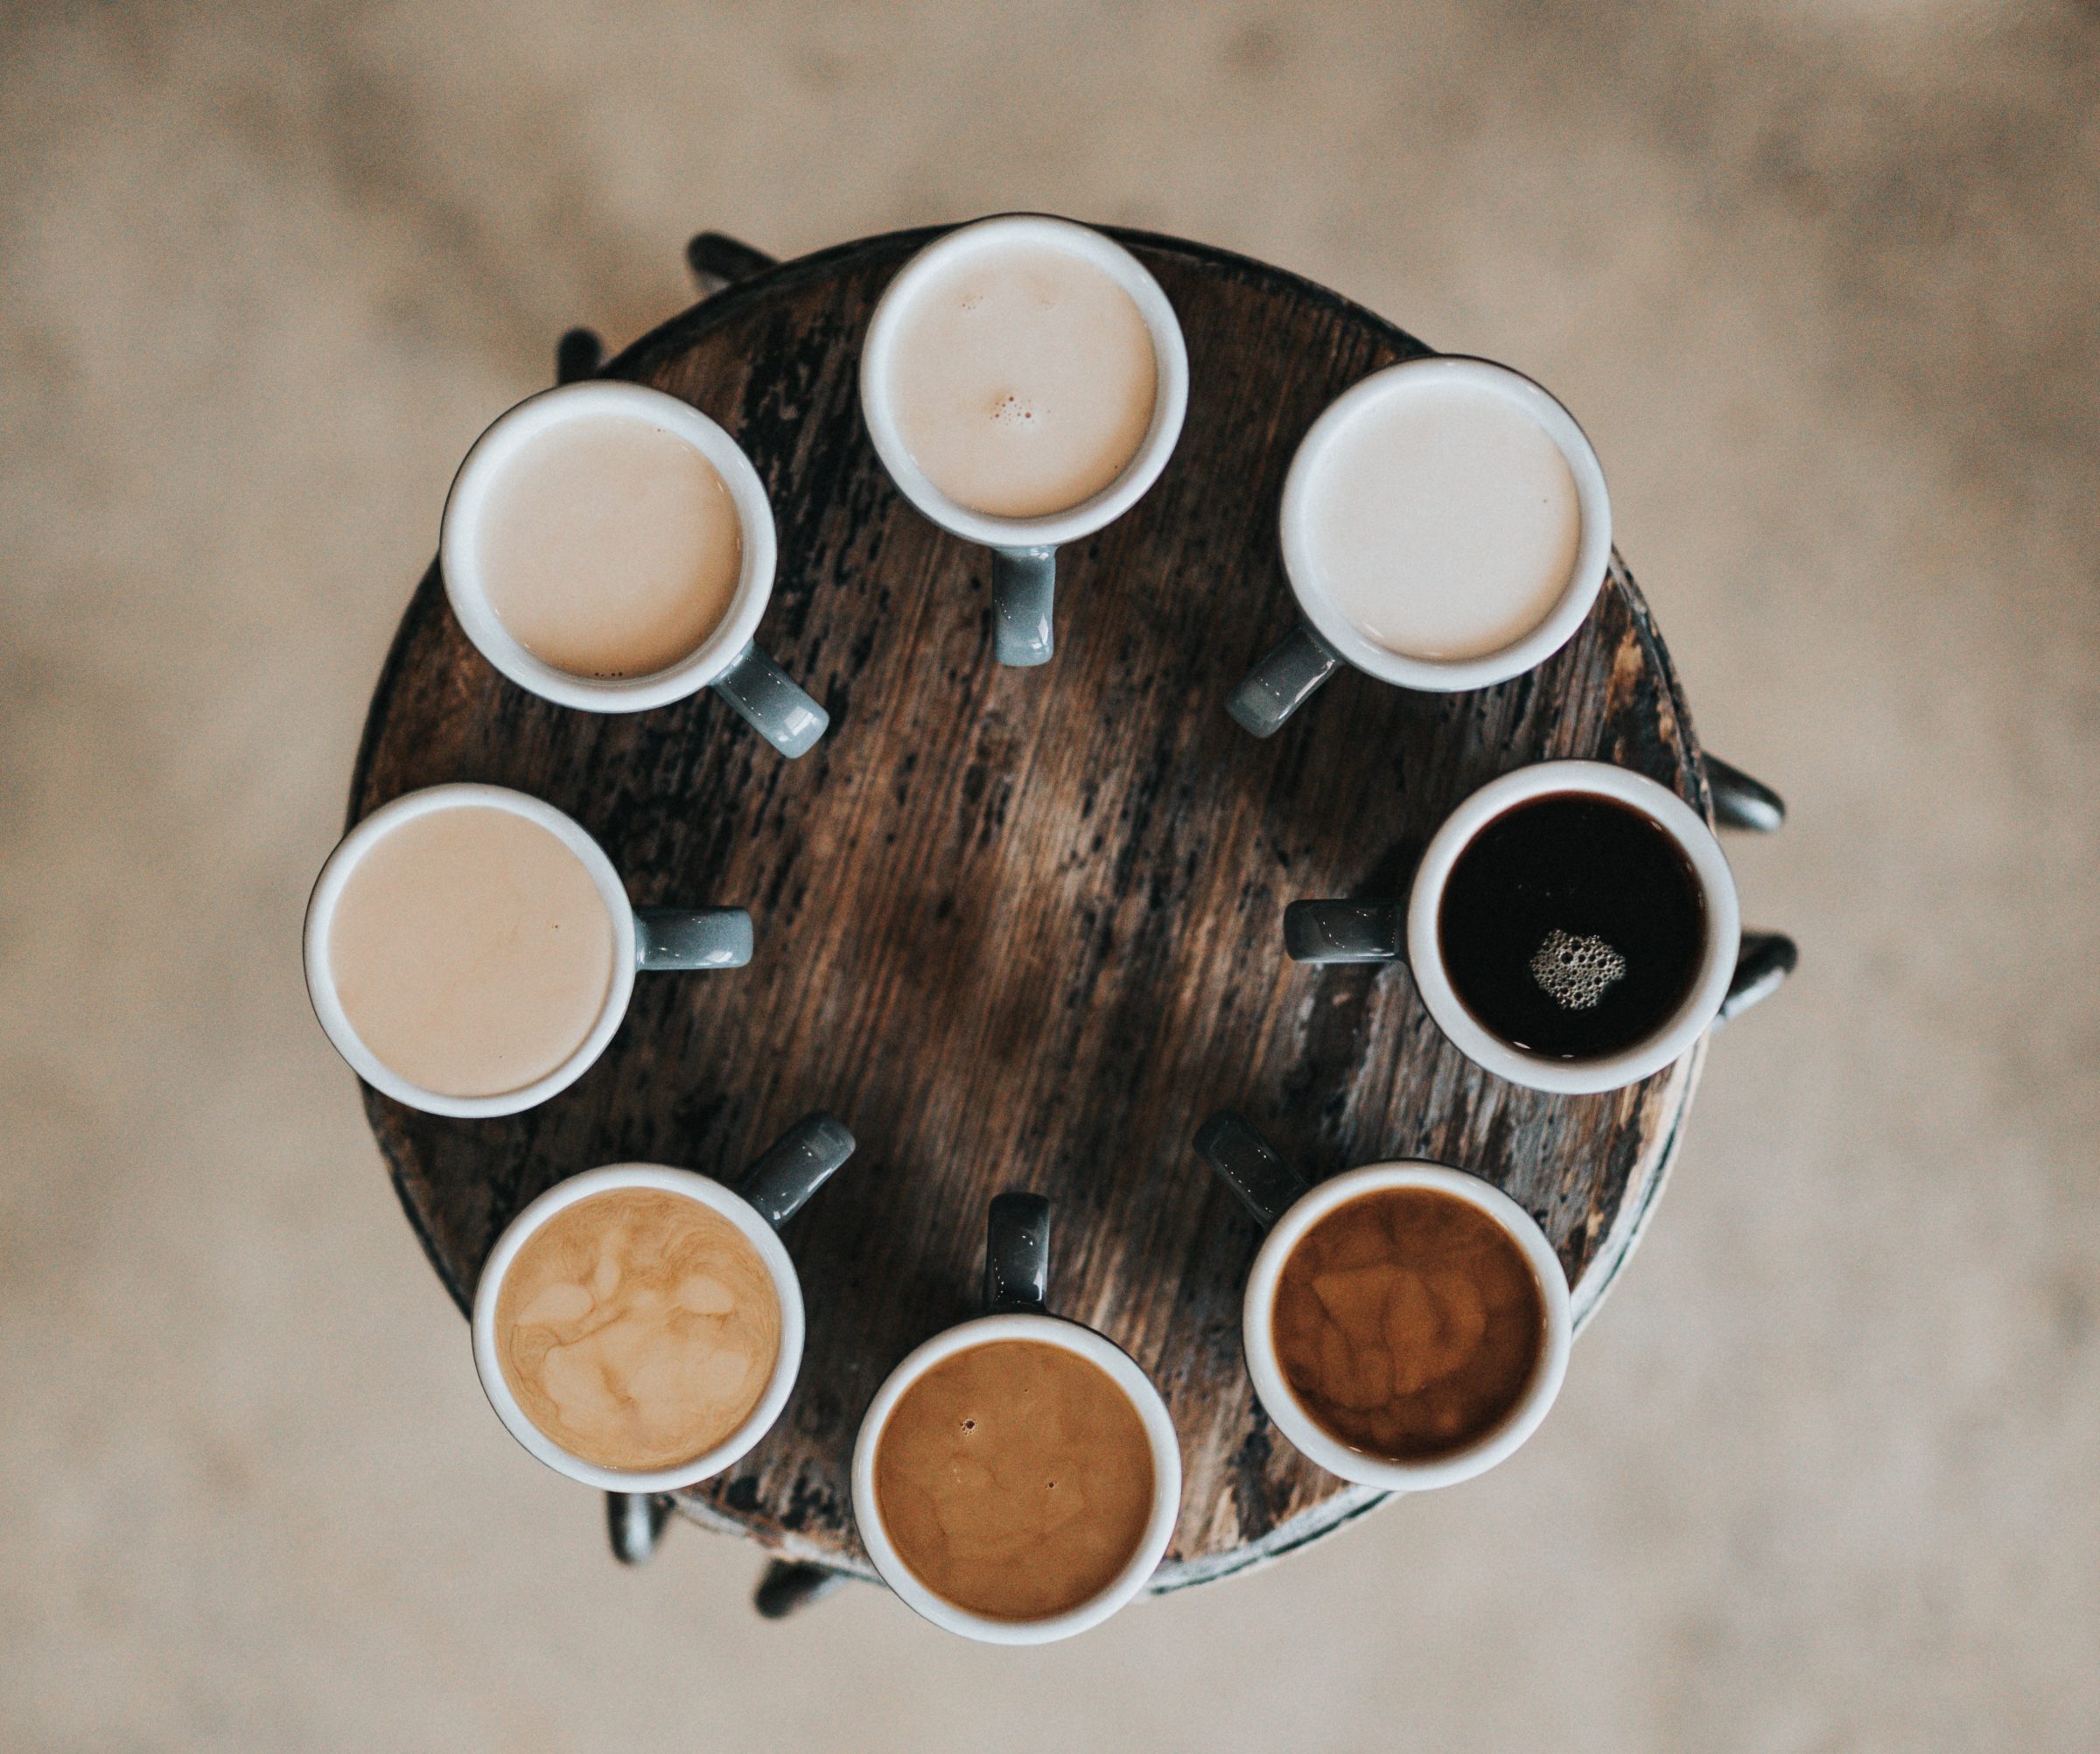 Koffie proeverij | Tips voor Seattle